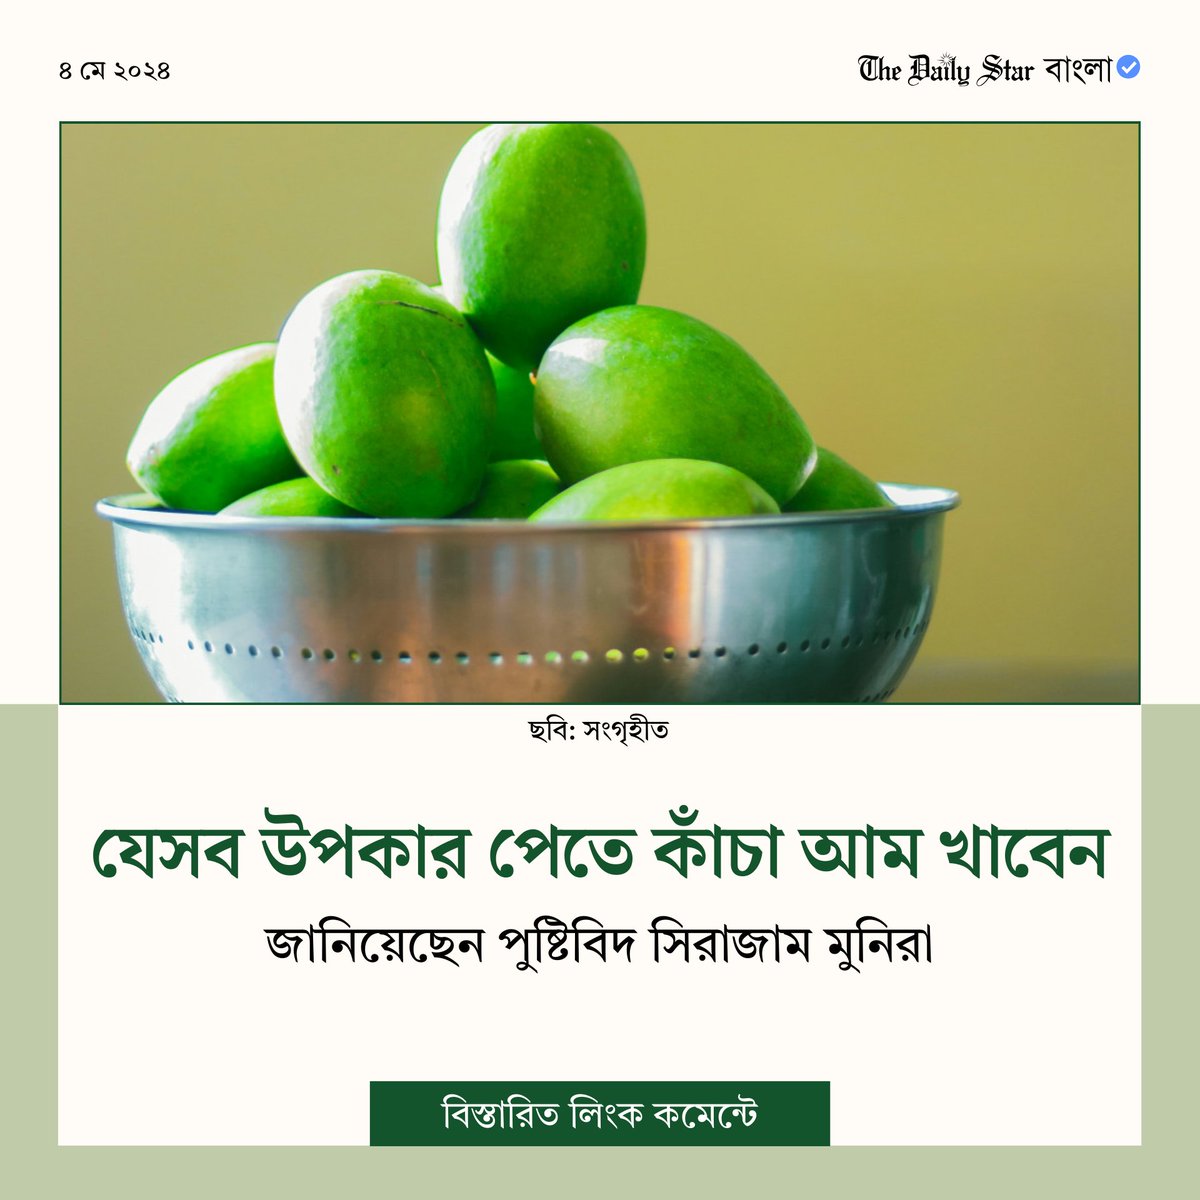 #BanglaNews #LifeStyleNews #Health